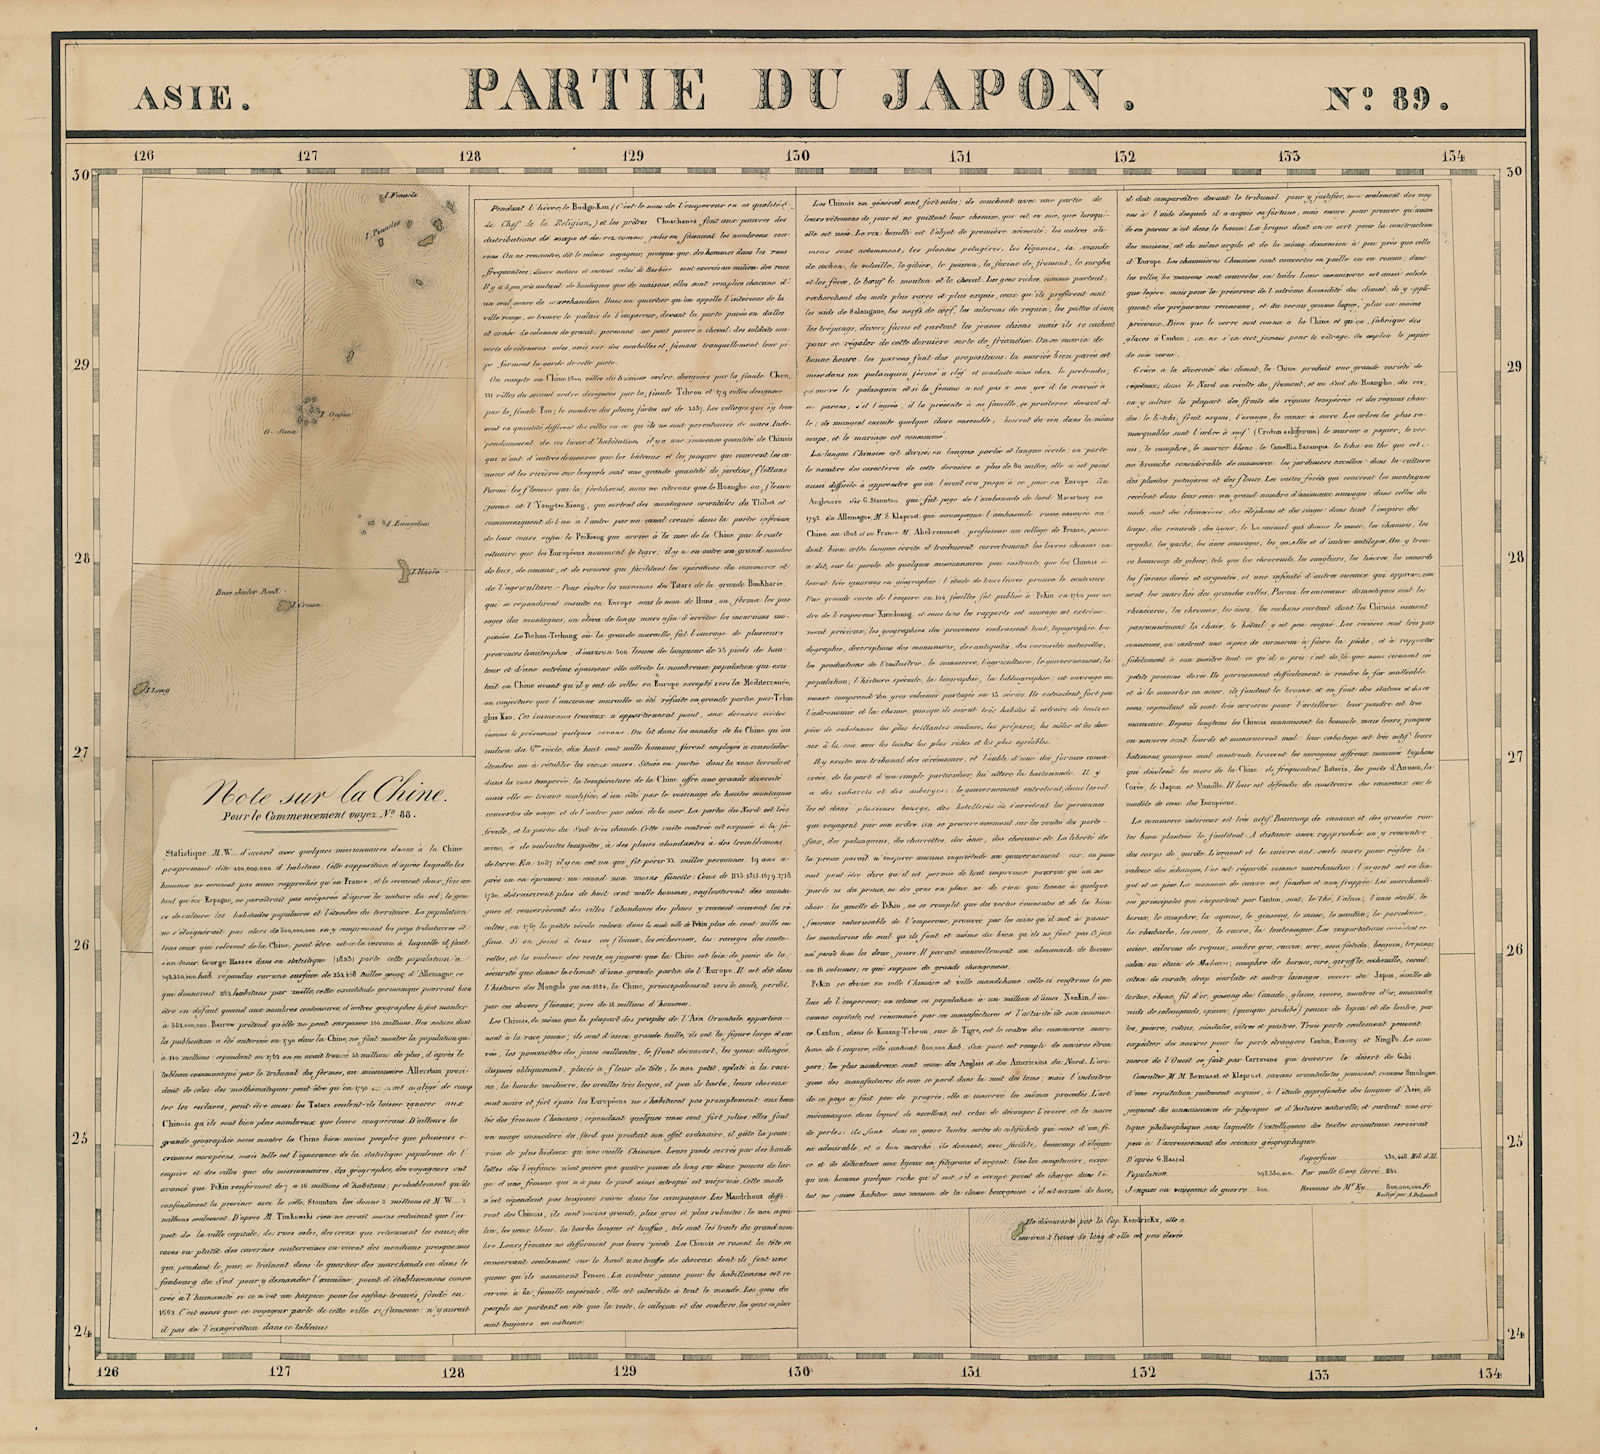 Associate Product Asie. Partie du Japon #89 Amami/Ryukyu Islands Japan. VANDERMAELEN 1827 map